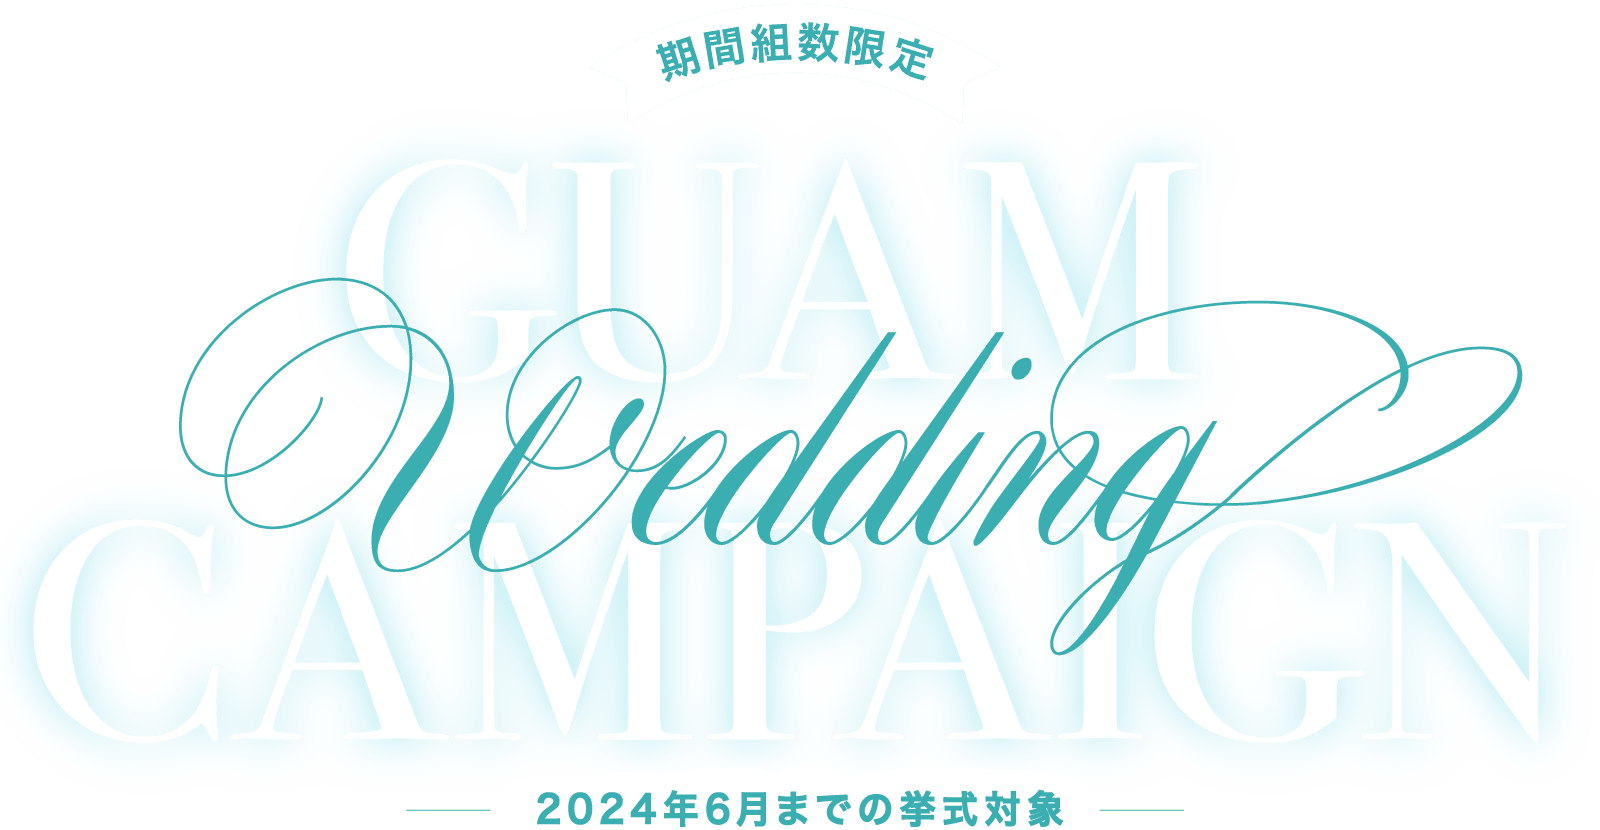 期間組数限定 GUAM WEDDING CAMPAIGN 2021年6月までの挙式対象